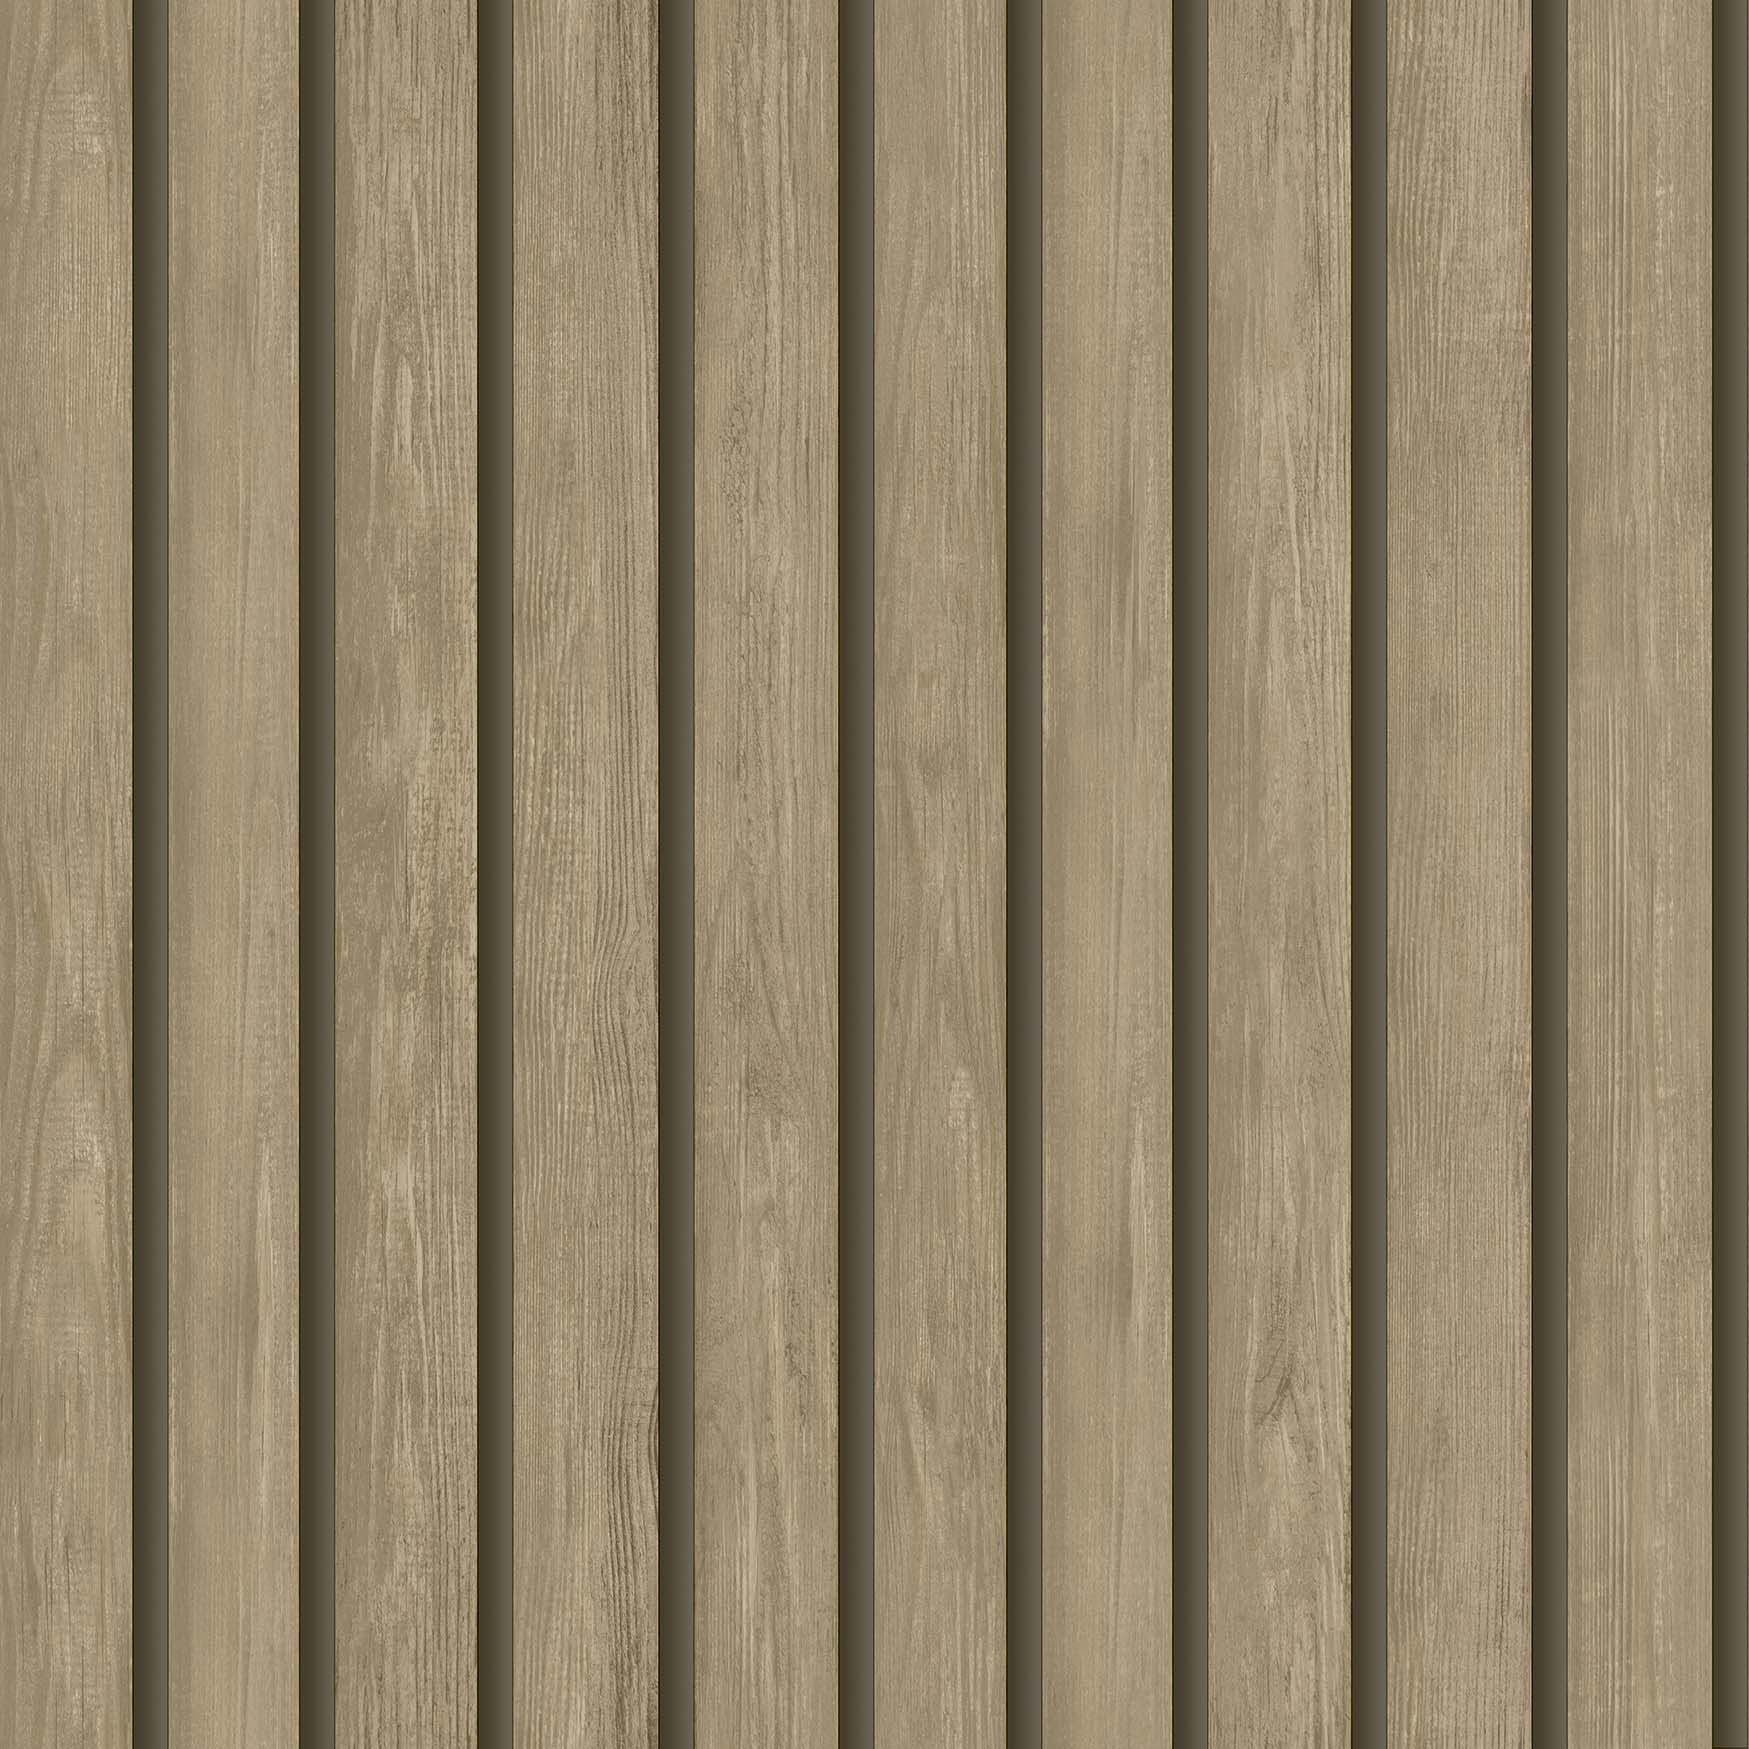 Image of Holden Decor Wood Slat Light Oak Wallpaper - 10.05m x 53cm